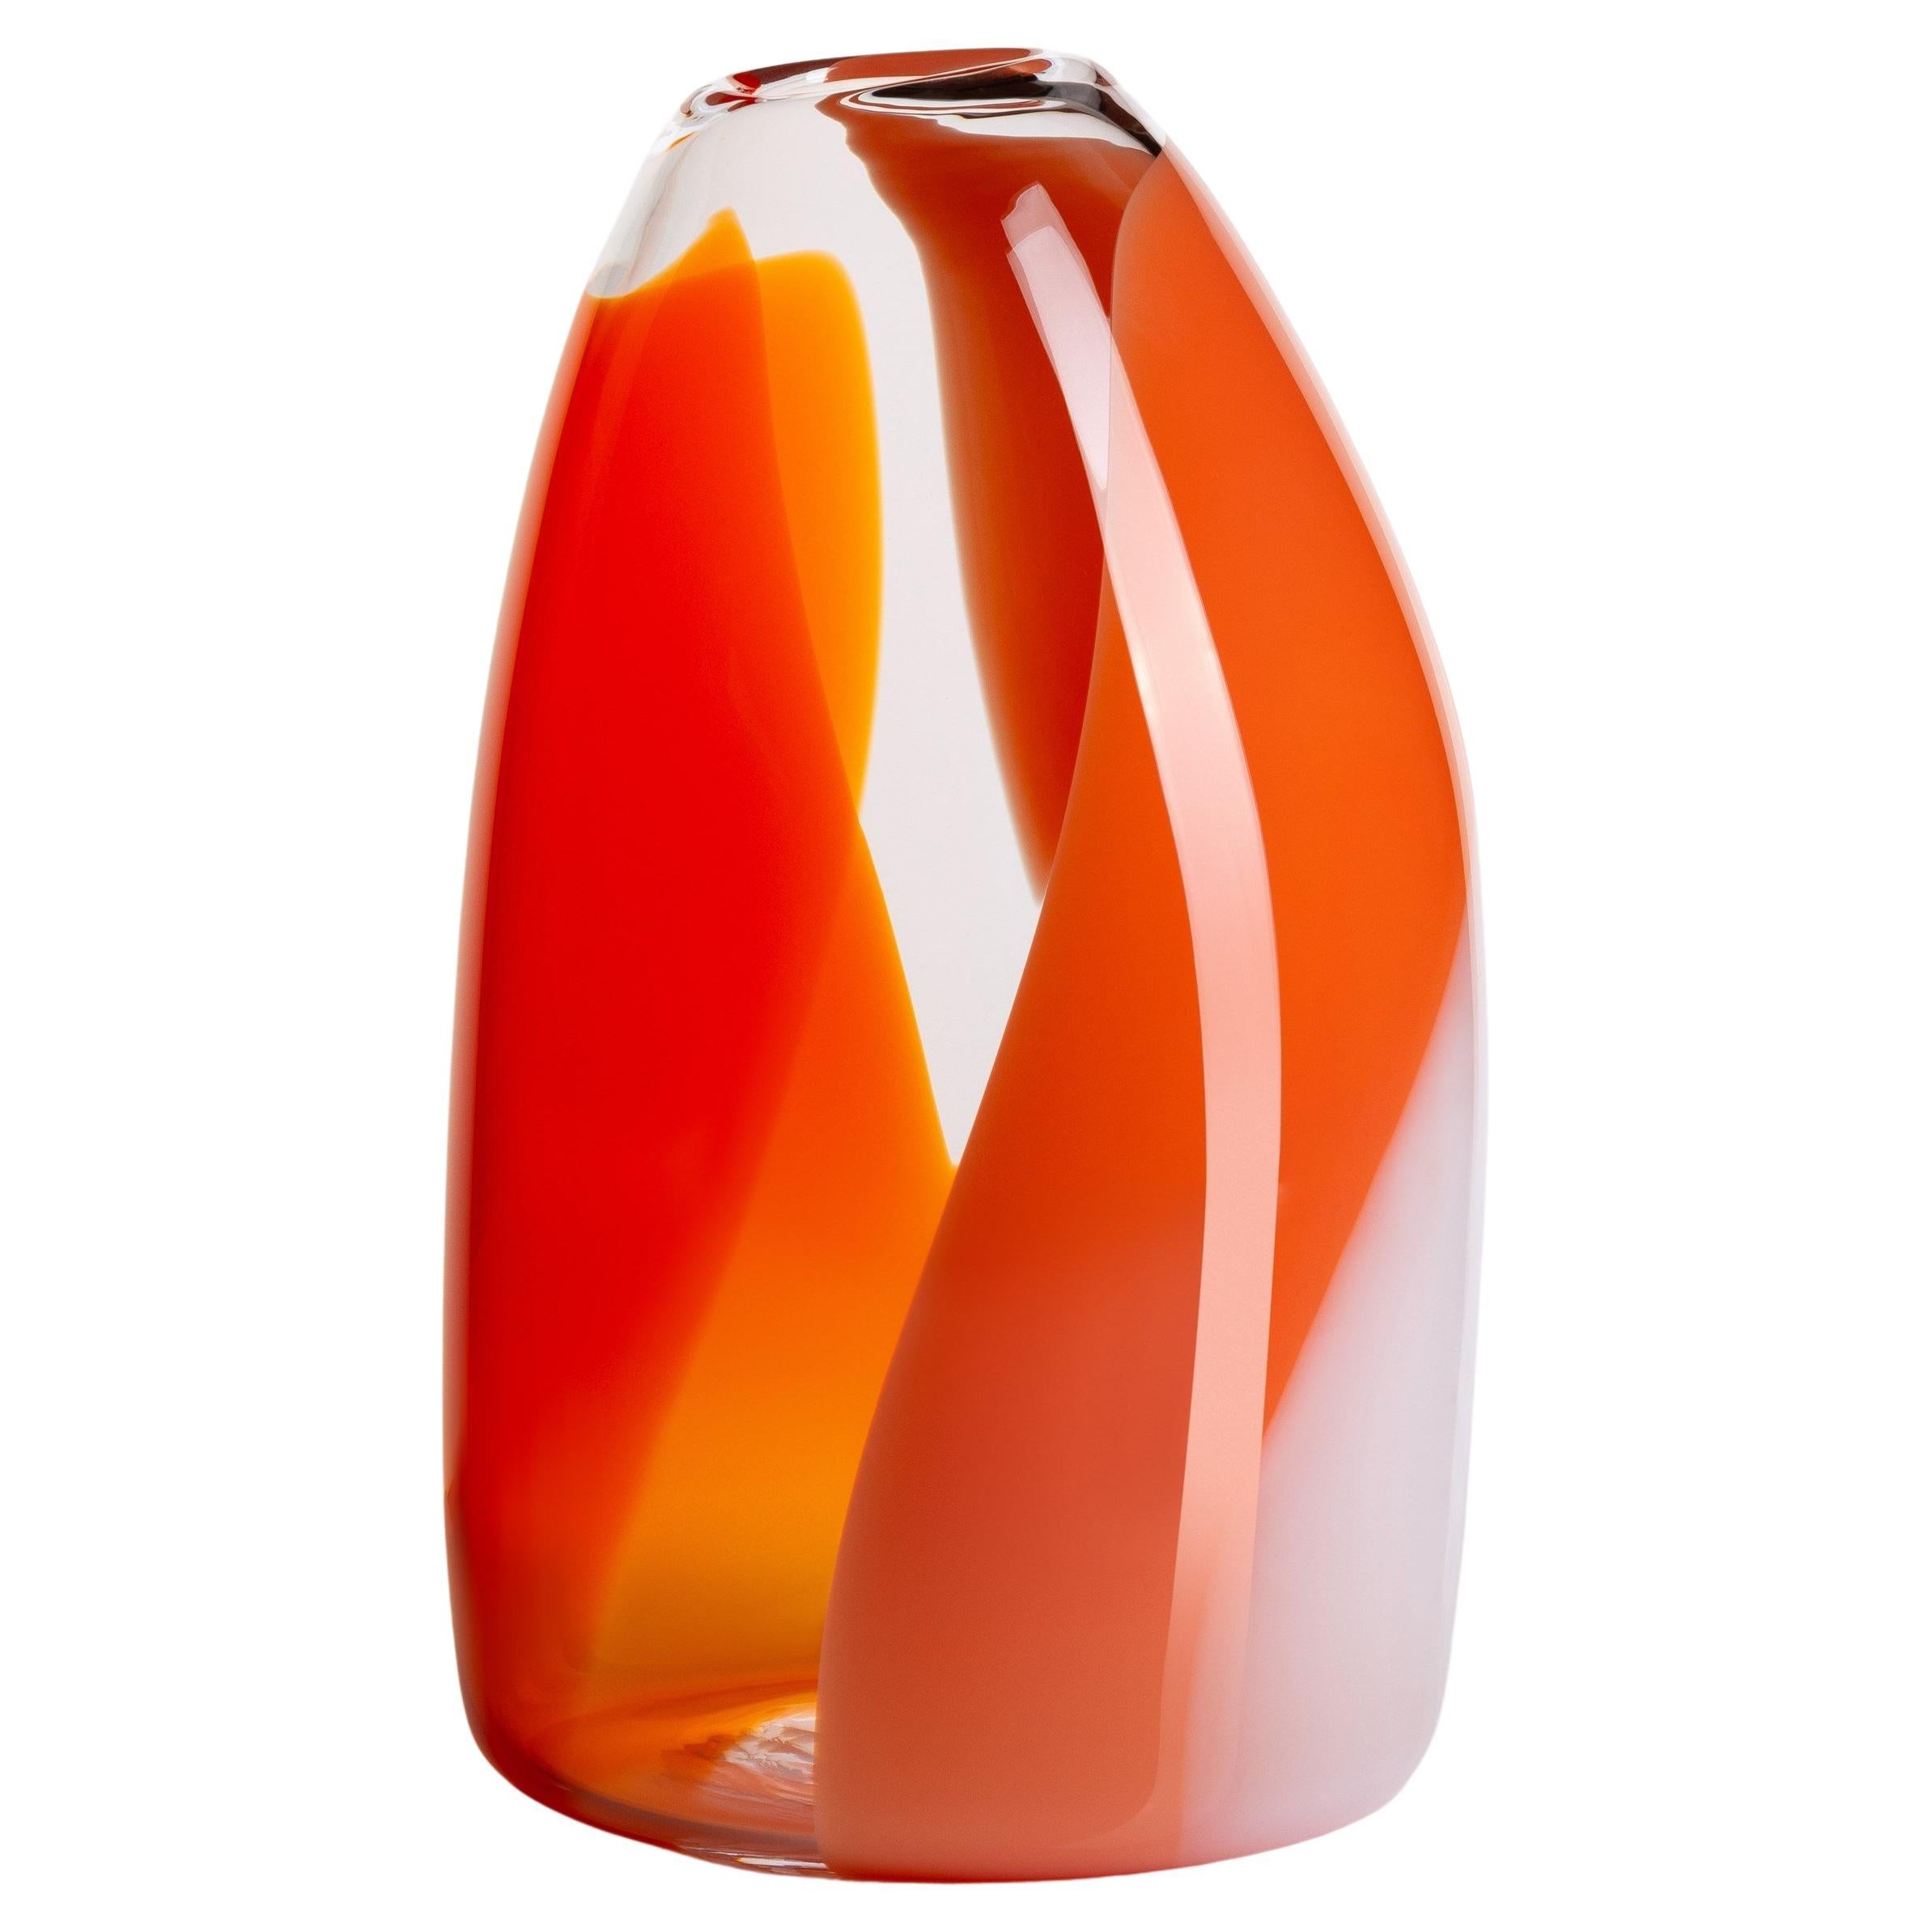 Waves No 487, clear, red, orange & peach hand blown glass vase by Neil Wilkin